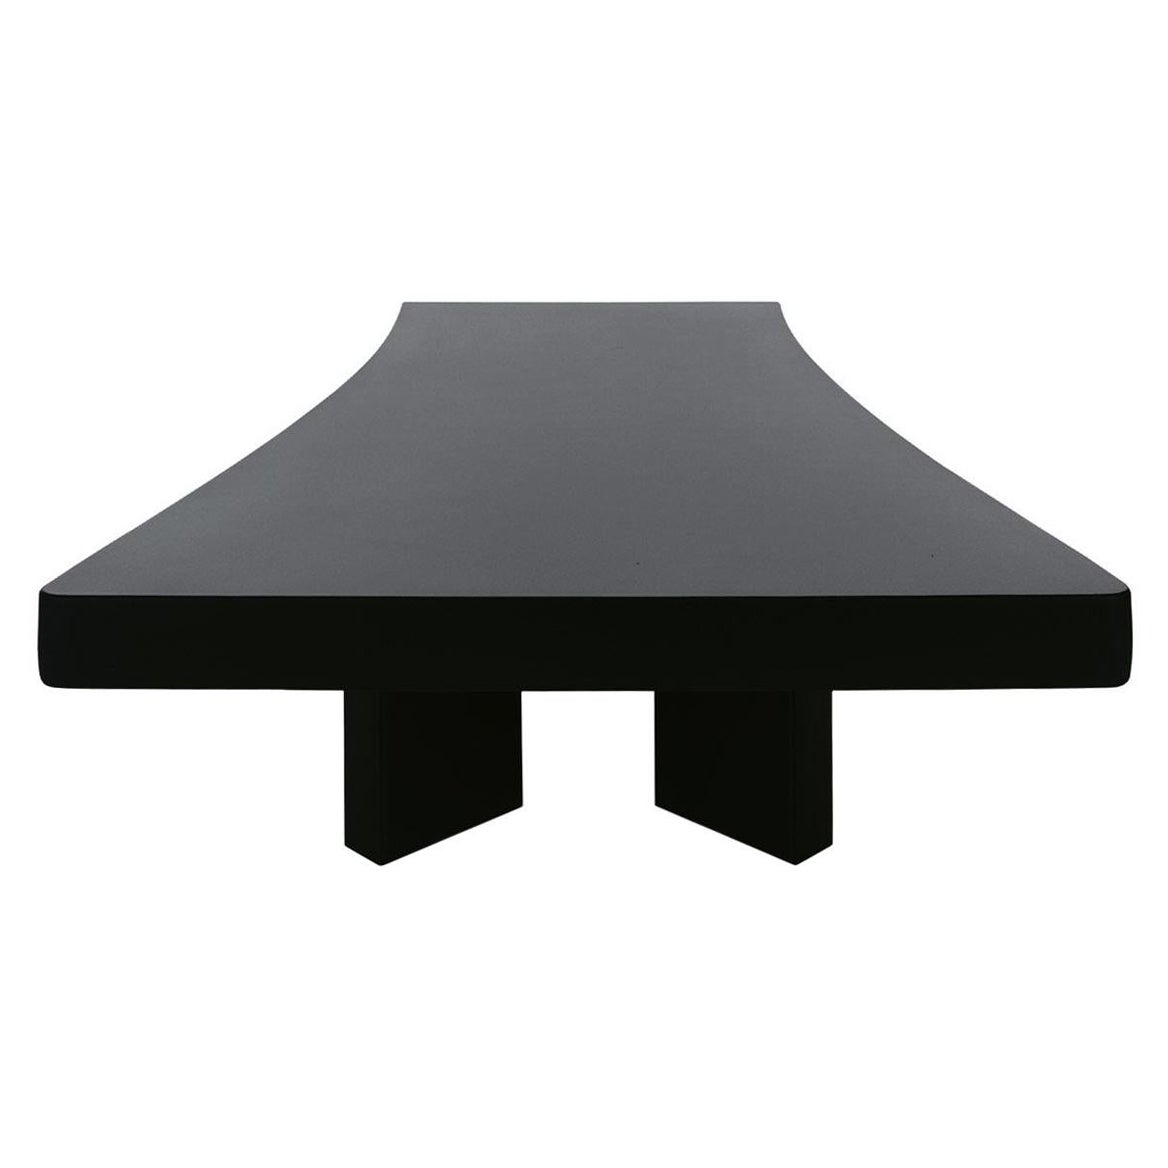 Table basse Plana 515 de Charlotte Perriand, bois teinté noir, par Cassina